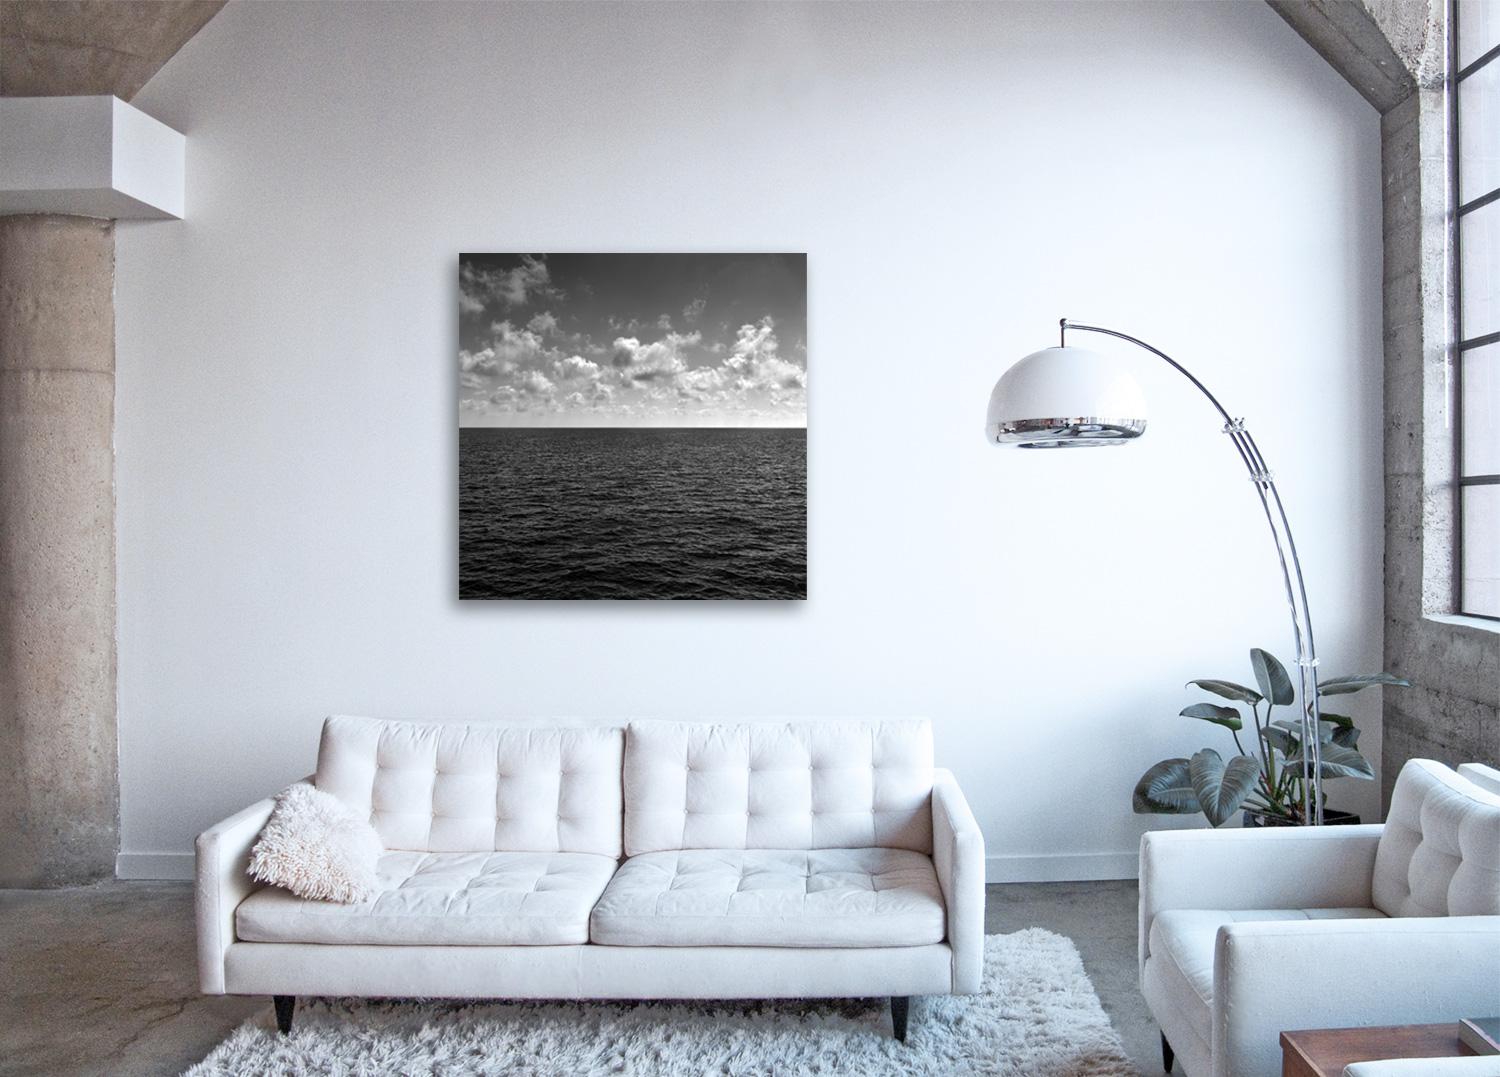 Seascape VII - großformatige Fotografie von Wolkenformationen und spiegelndem Meer (Schwarz), Black and White Photograph, von Frank Schott